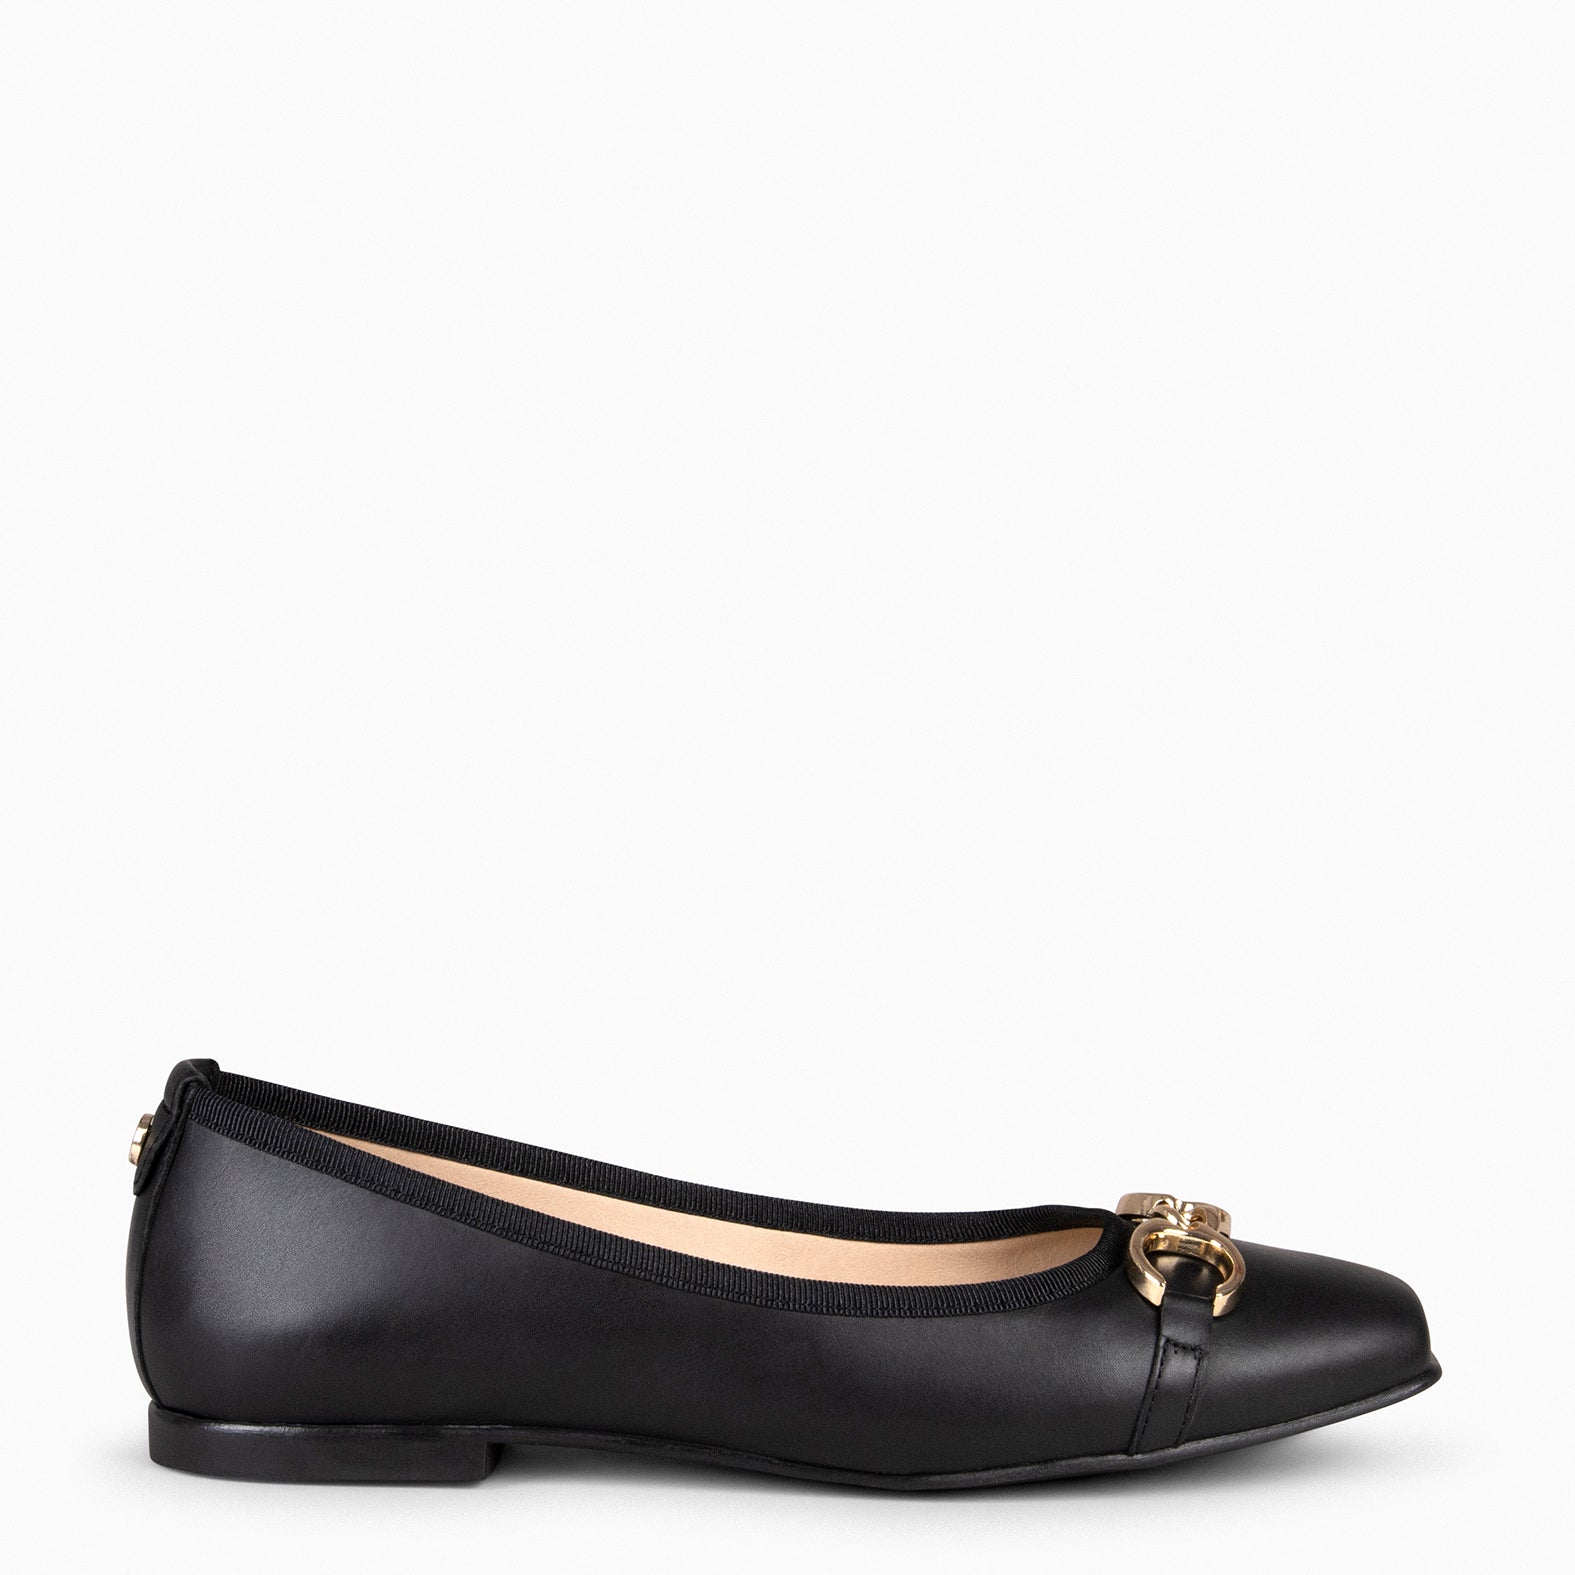 Manoletinas Mujer Con Cuña Beige — Zapatos Calzados Germans